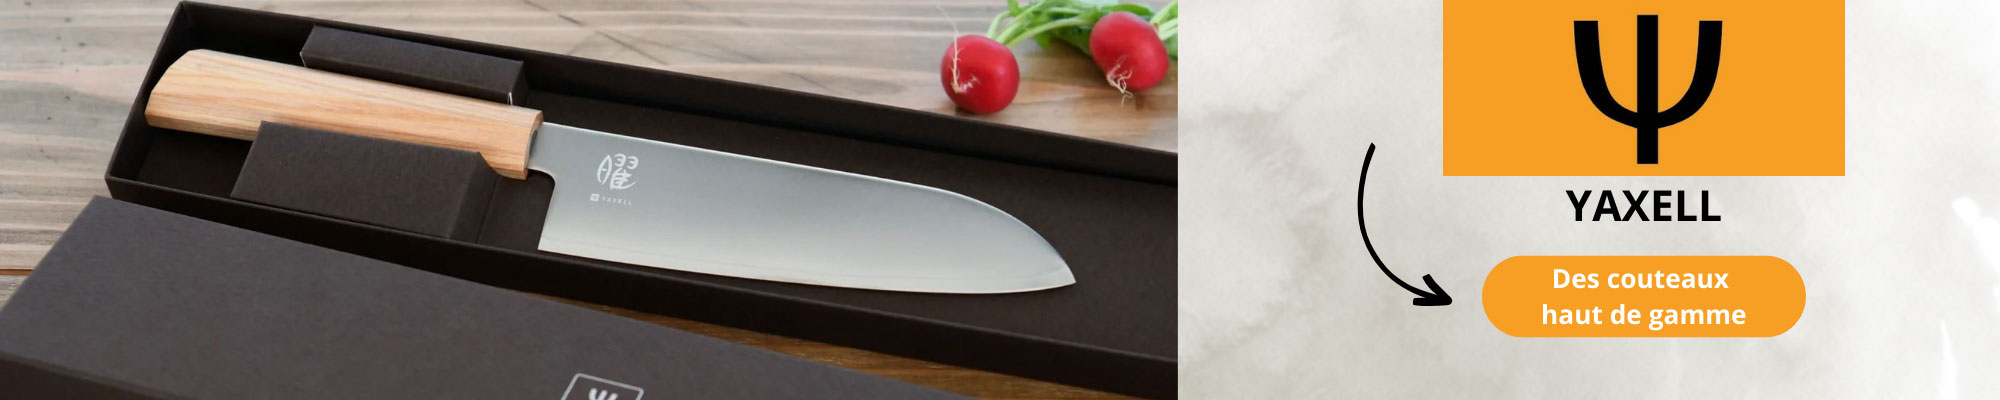 Yaxell, couteaux de cuisine japonais haut de gamme